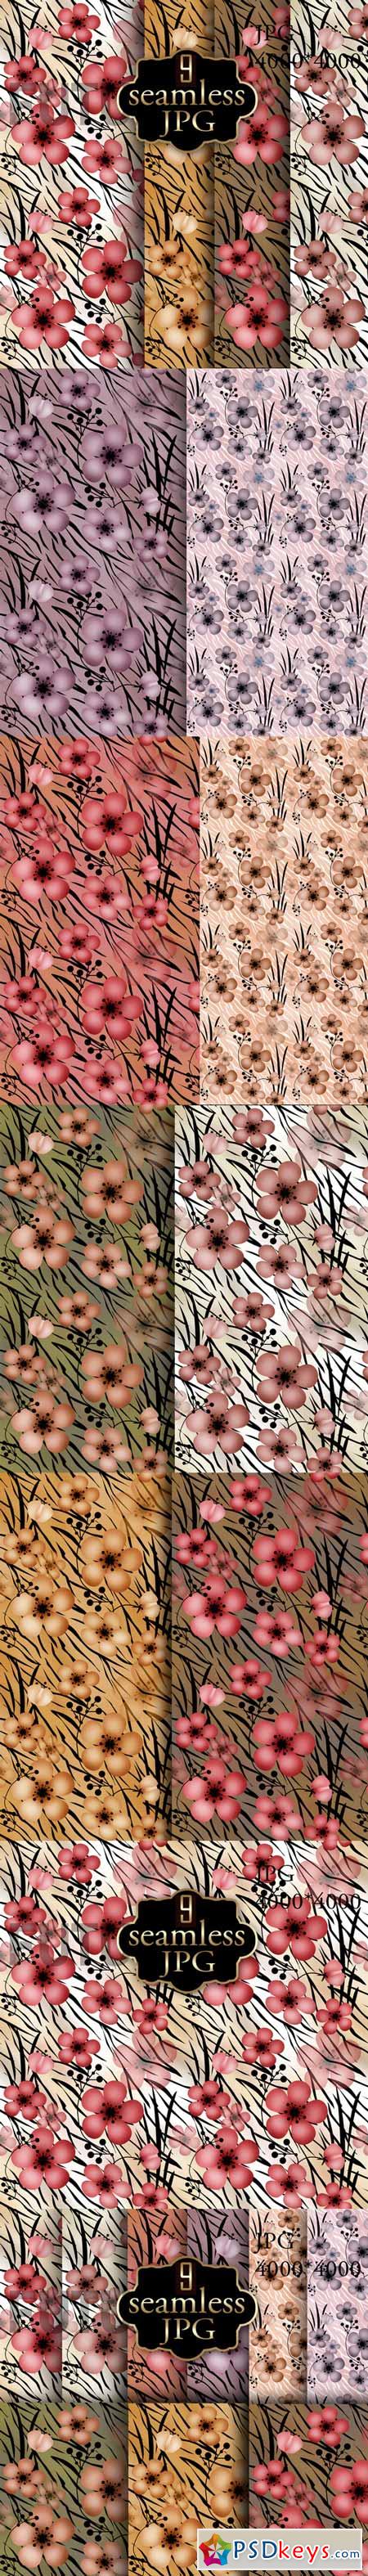 Flower backgrounds for tiger 608202